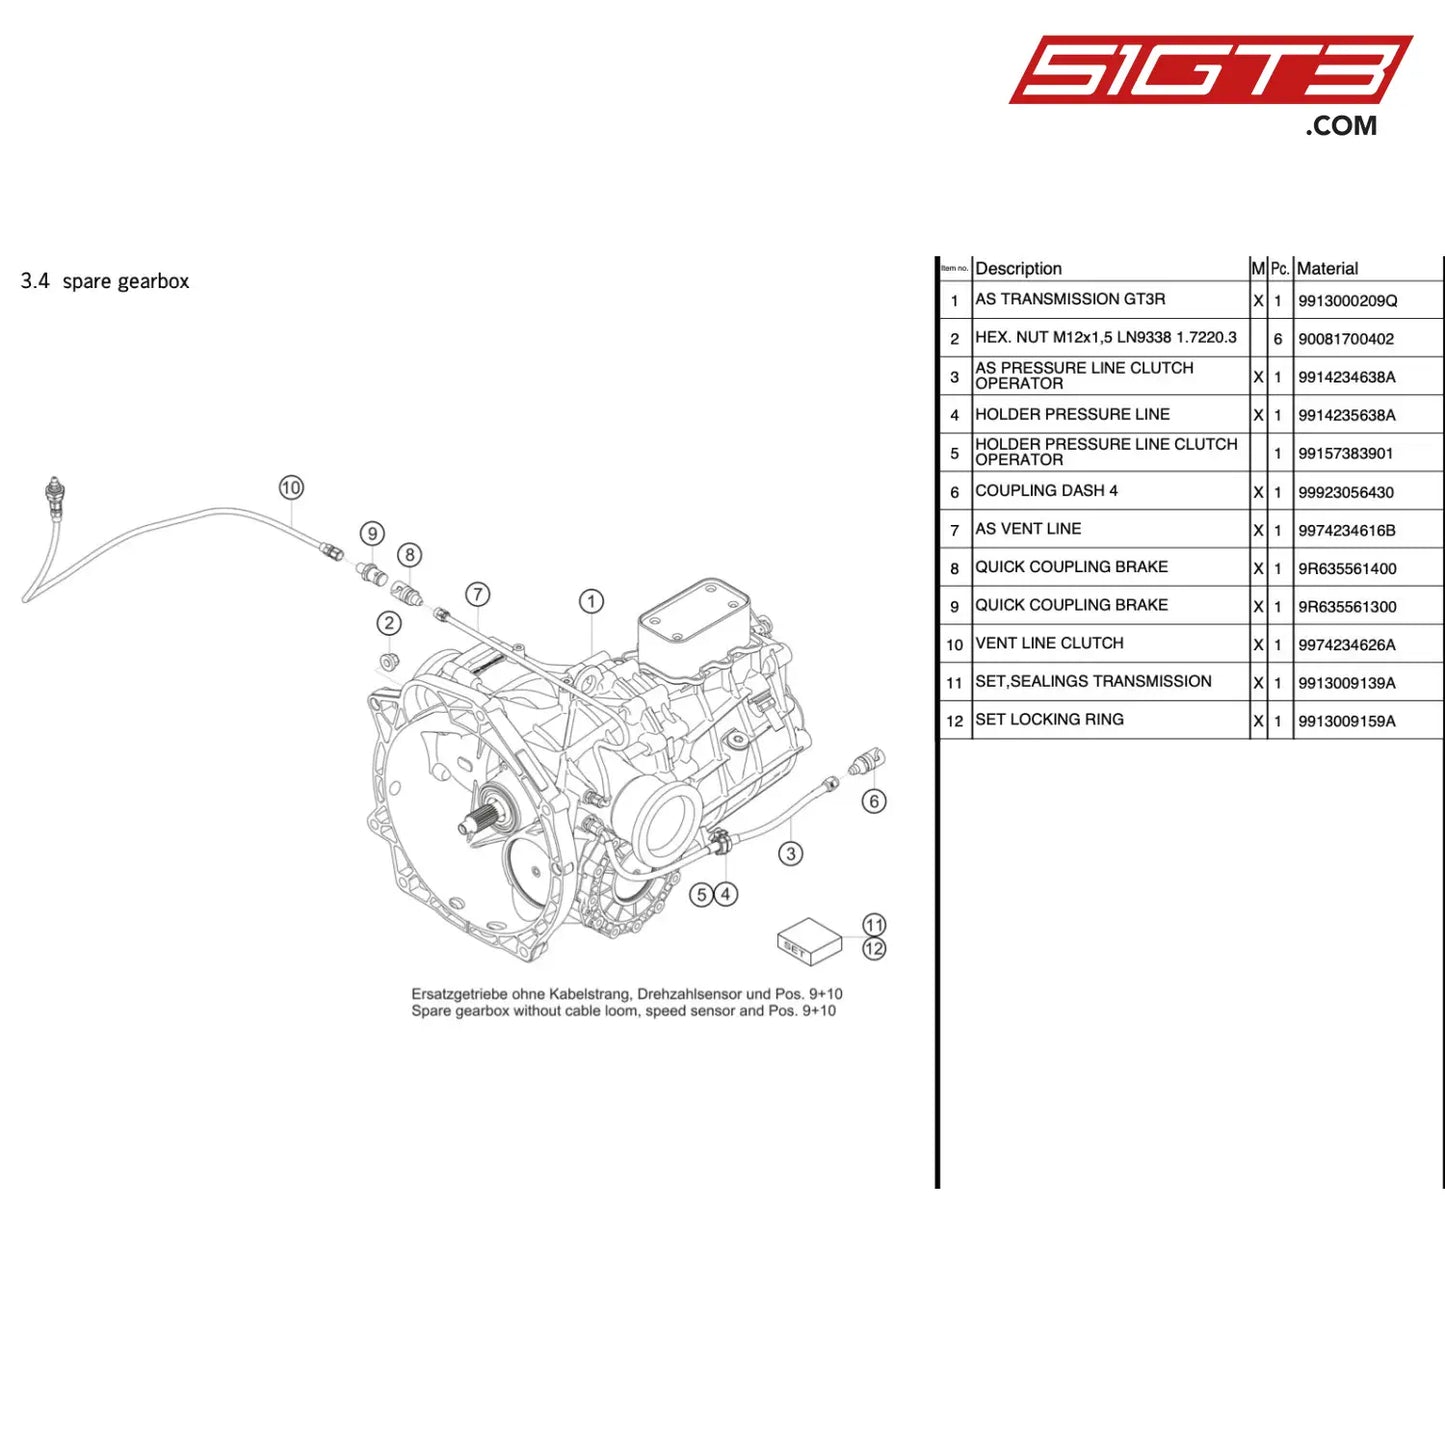 Quick Release Coupling Brake - 9R635561300 [Porsche 911 Gt3 R Type 991 (Gen 1)] Spare Gearbox